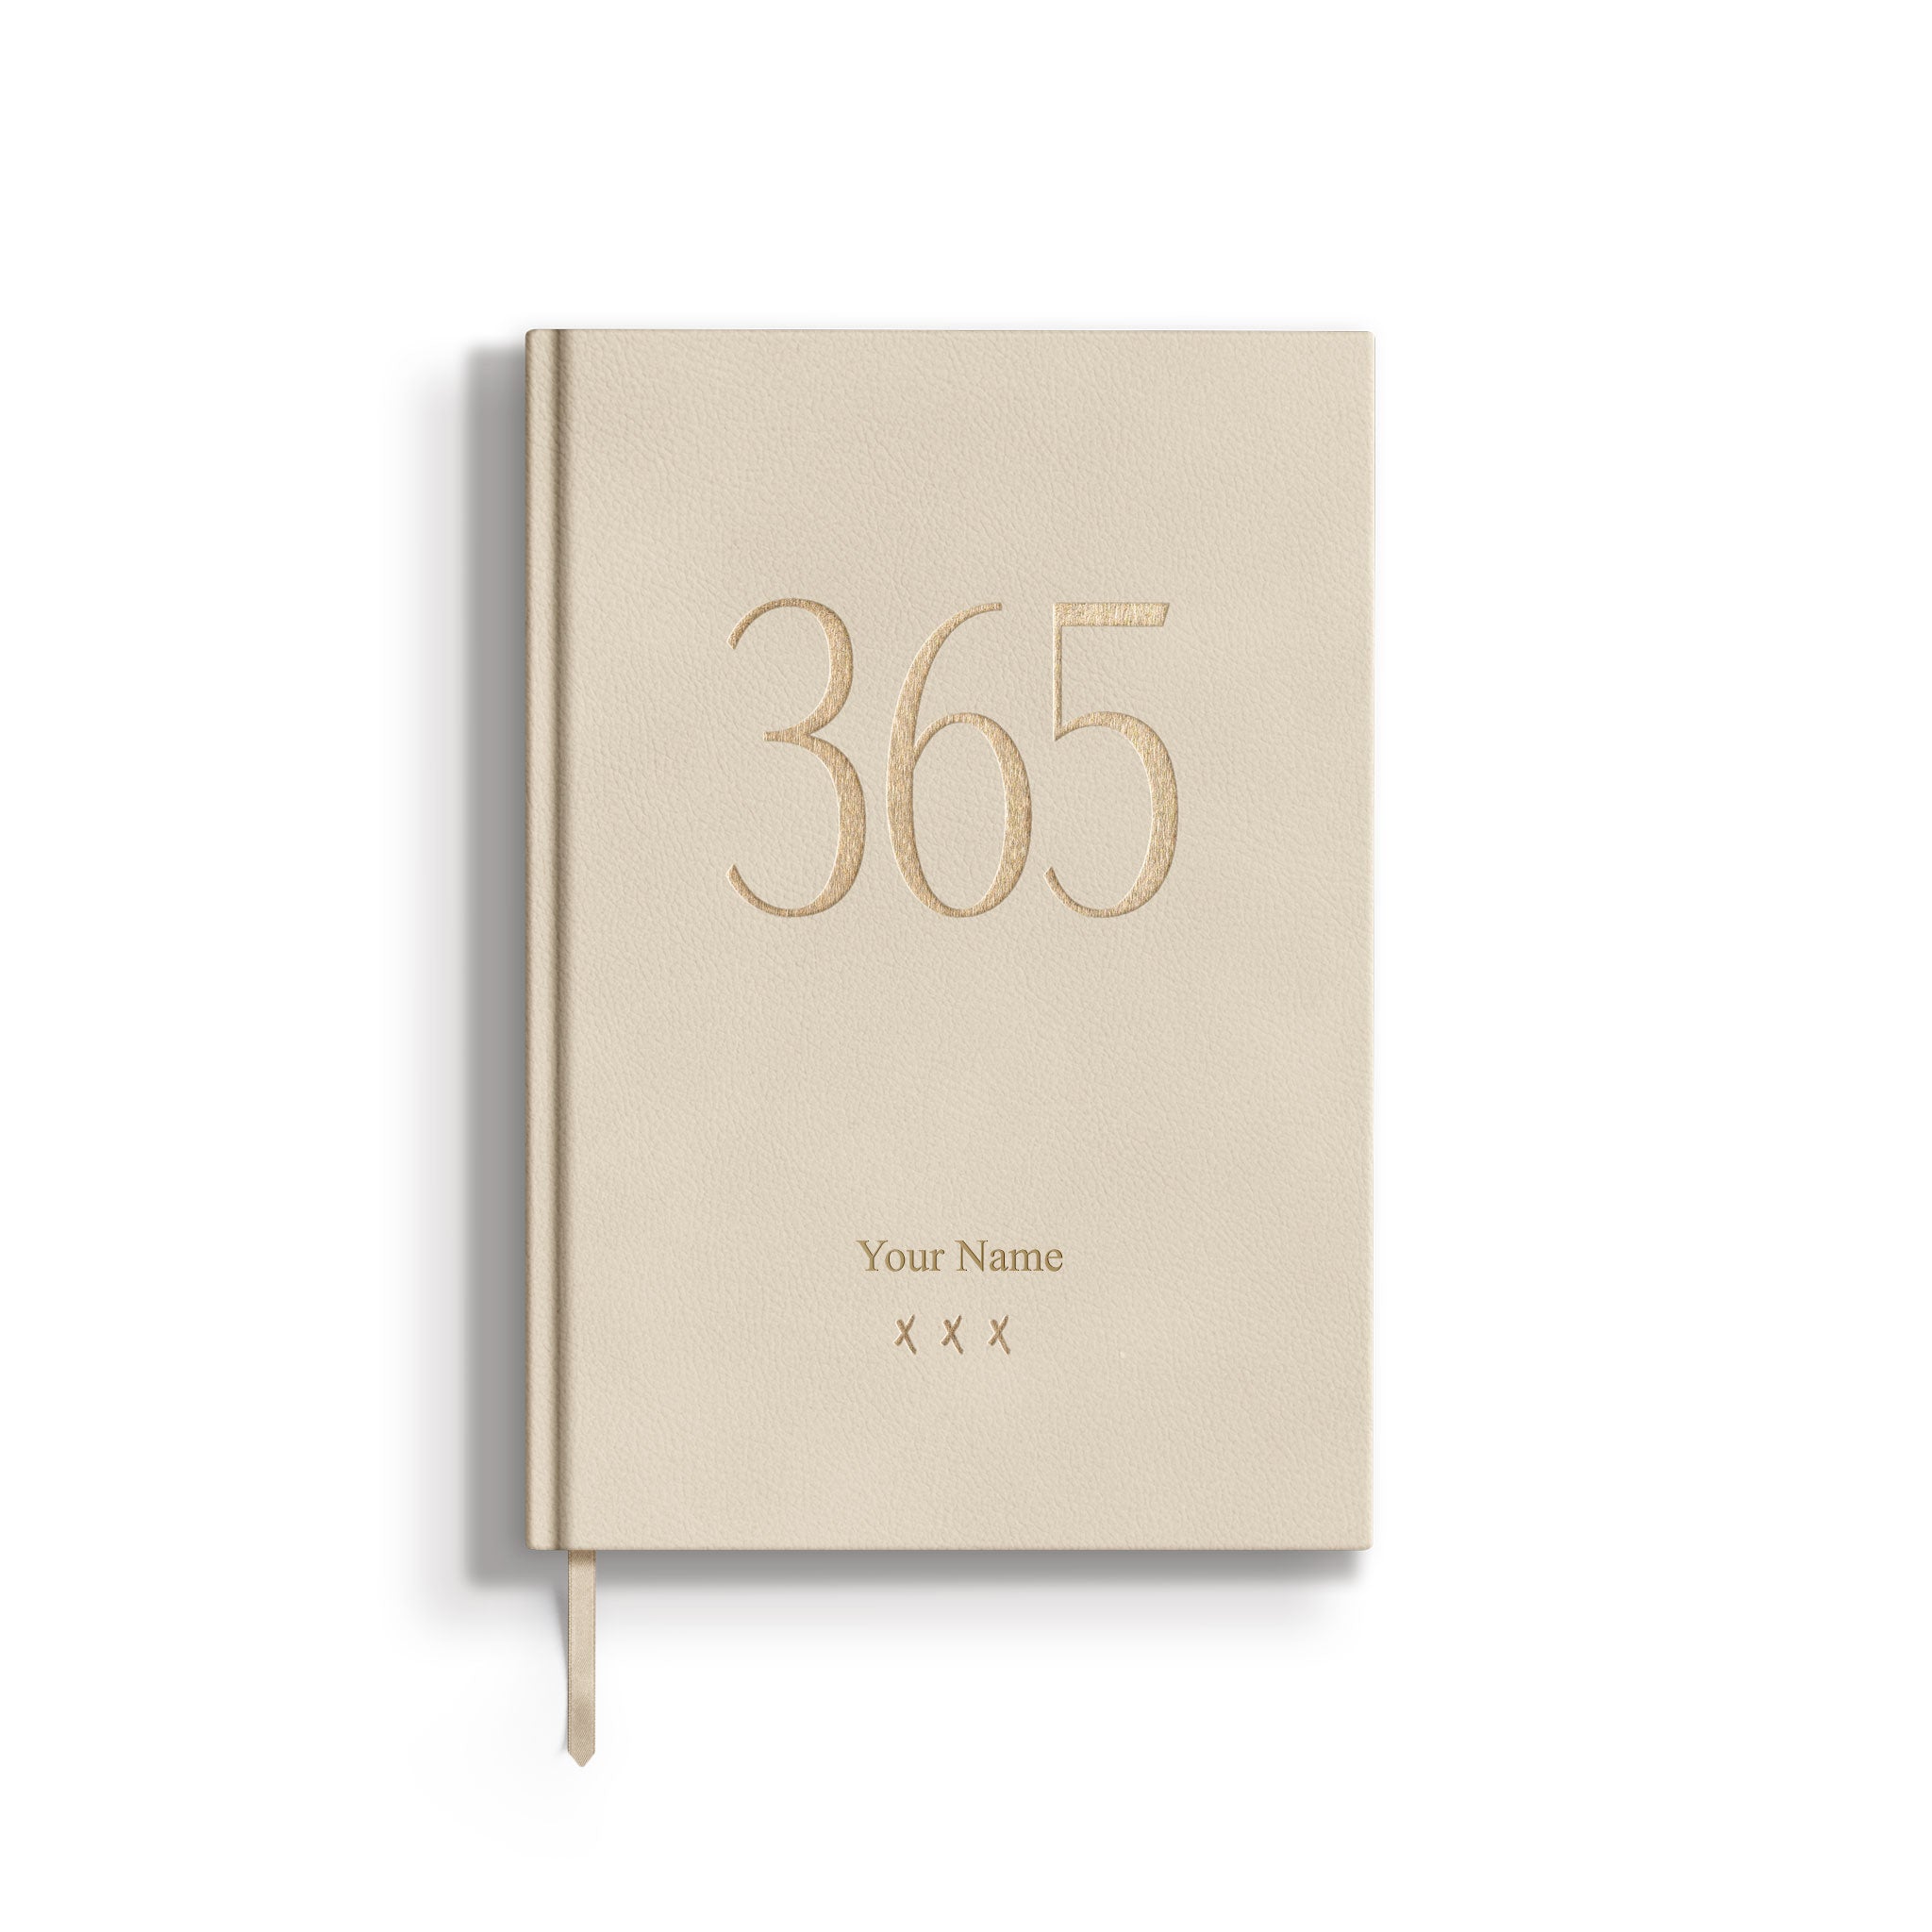 Notizbuch / Tagebuch 365, A5, Cream